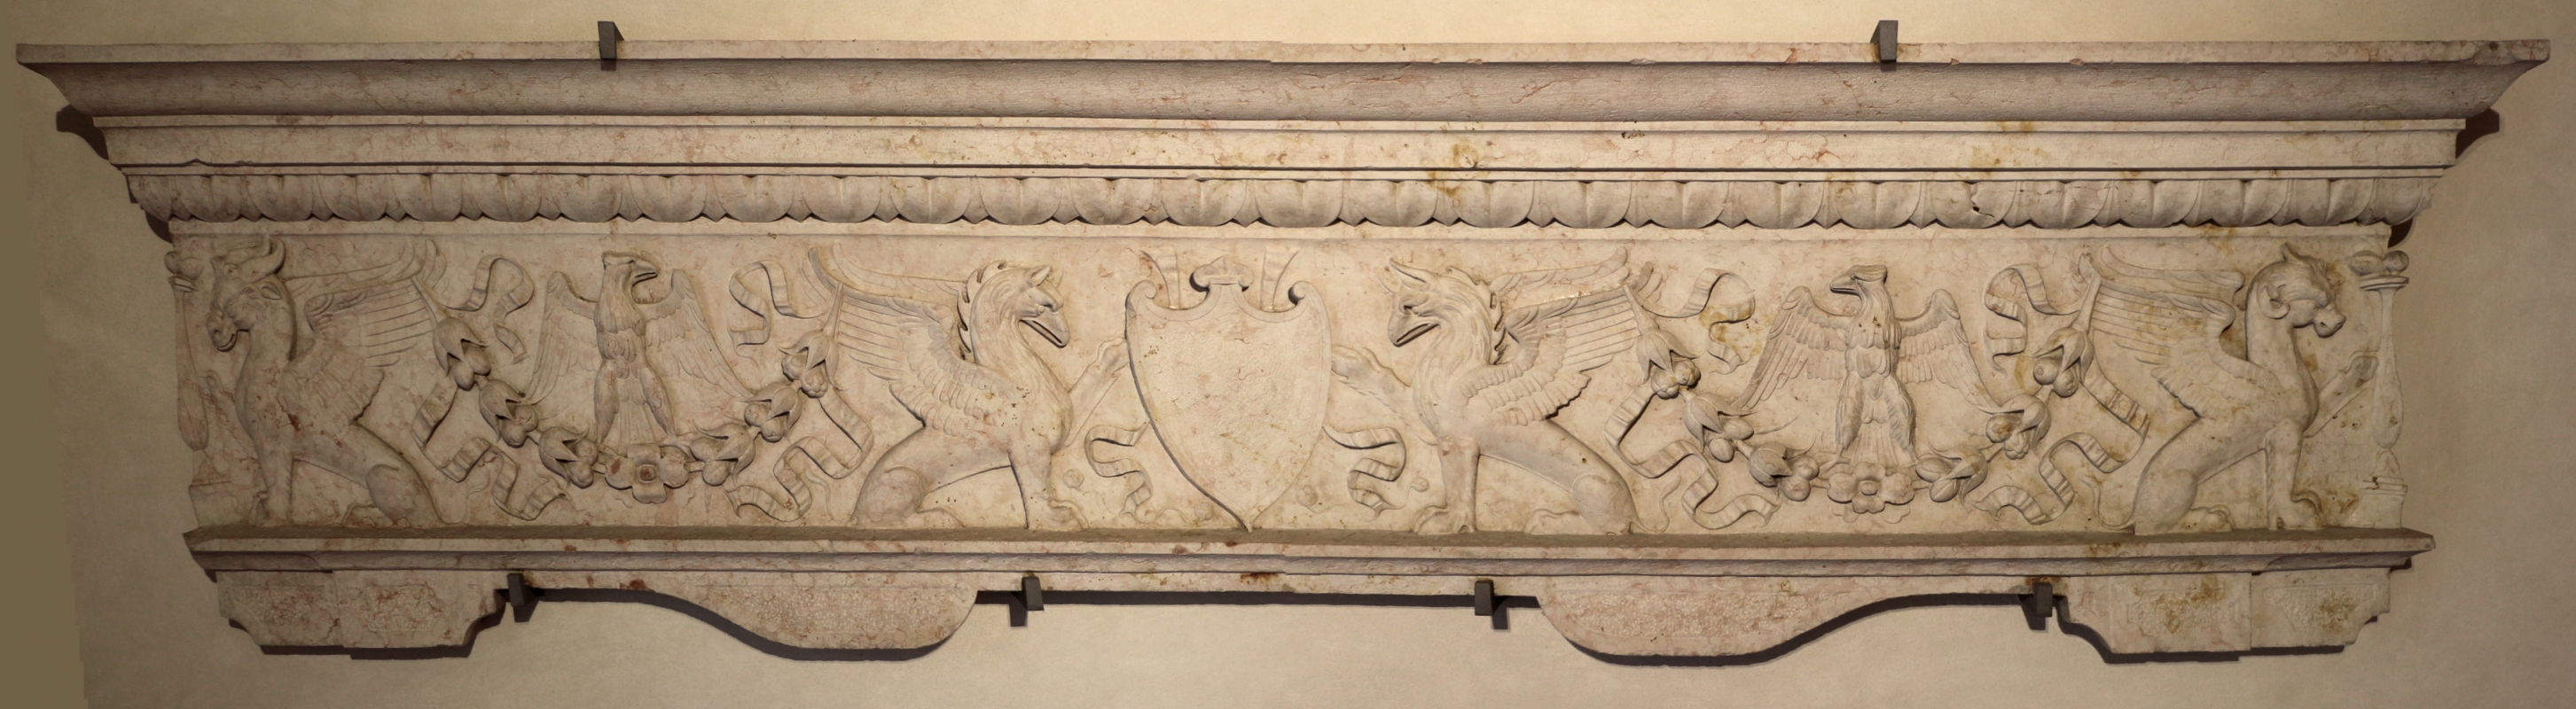 Frontale di camino con stemma abraso, ferrara, 1480-1510 ca - Sailko